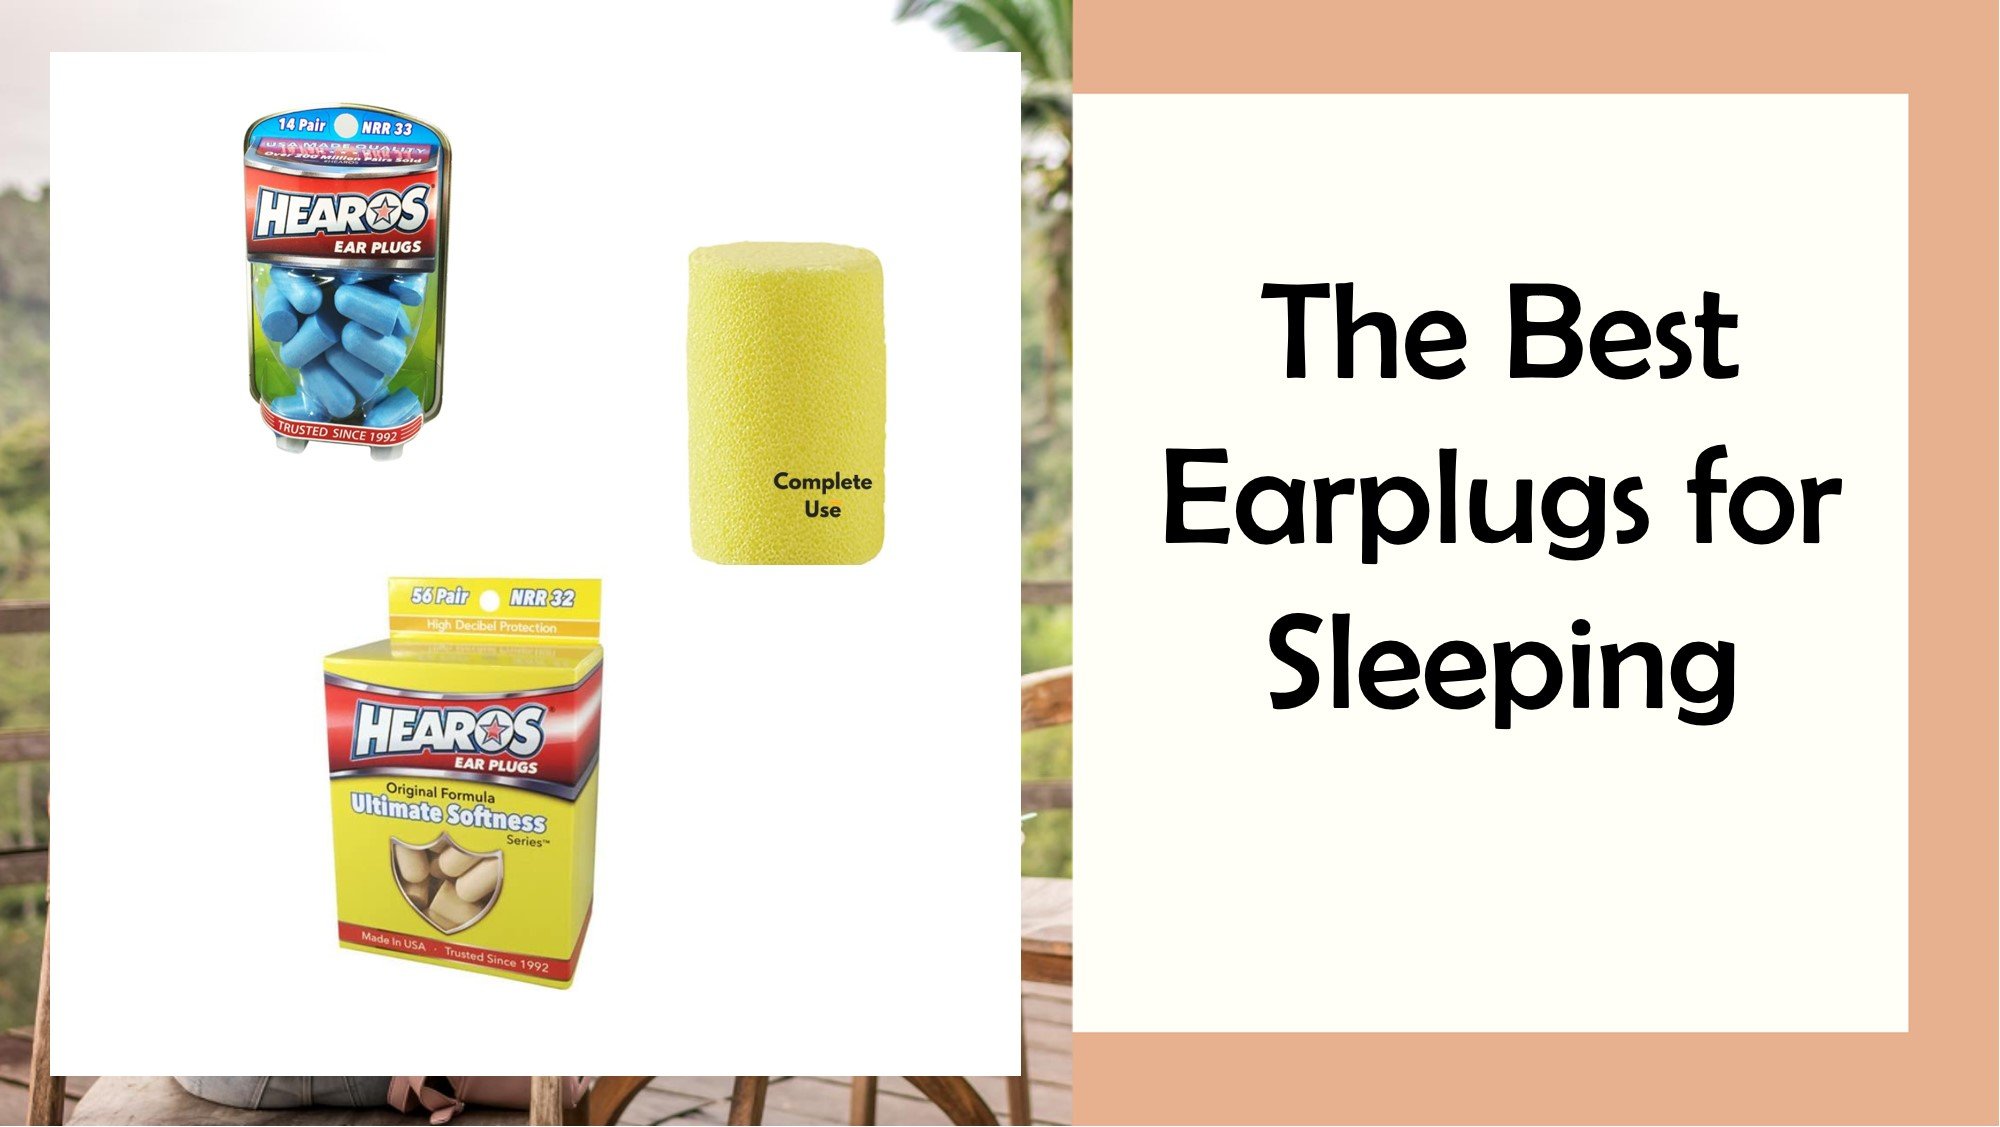 The Best Earplugs for Sleeping